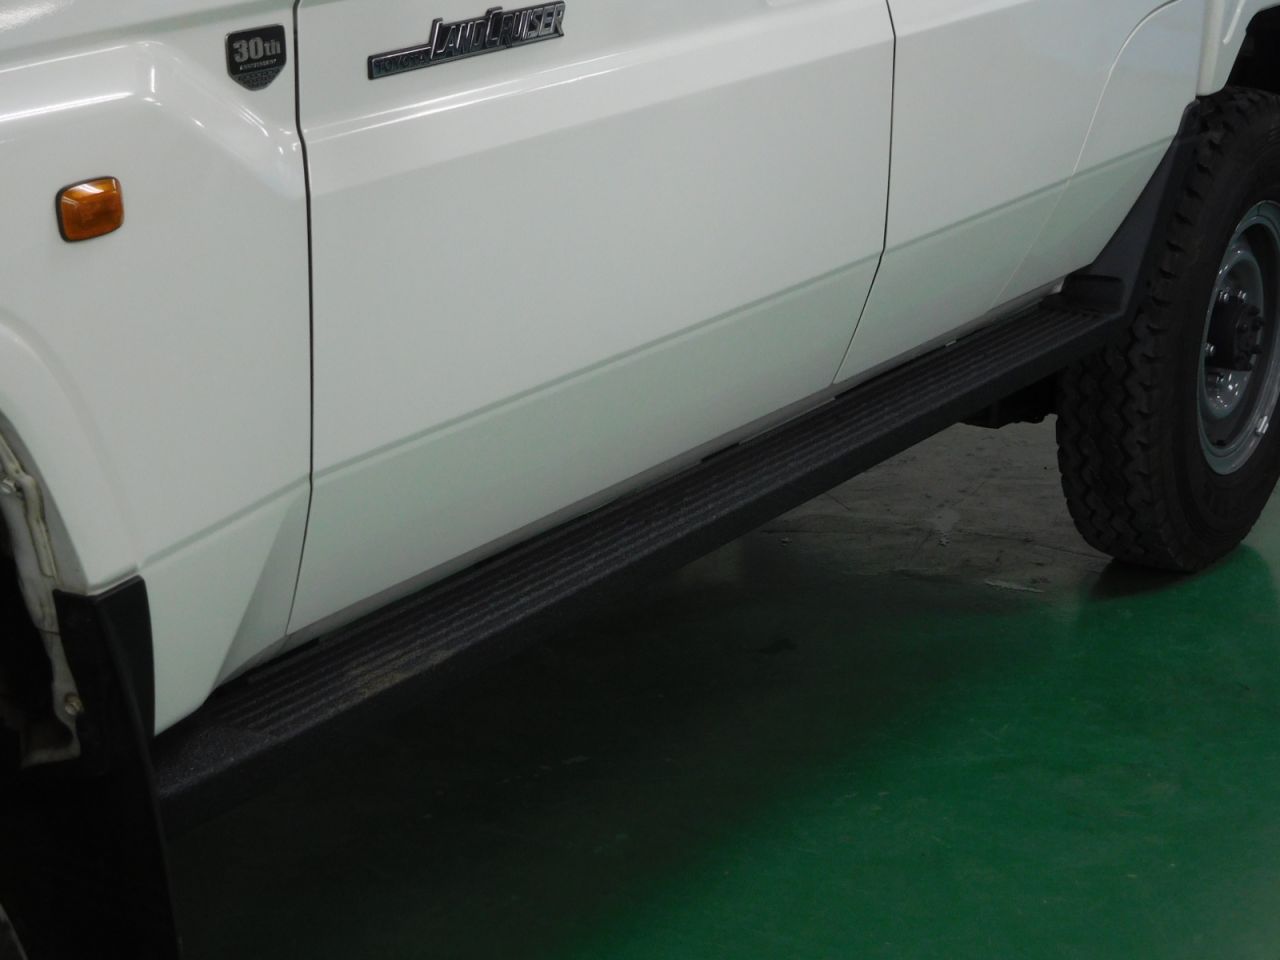 ランクル70 ピックアップトラック 輸出仕様 荷台の錆、傷防止に最適 